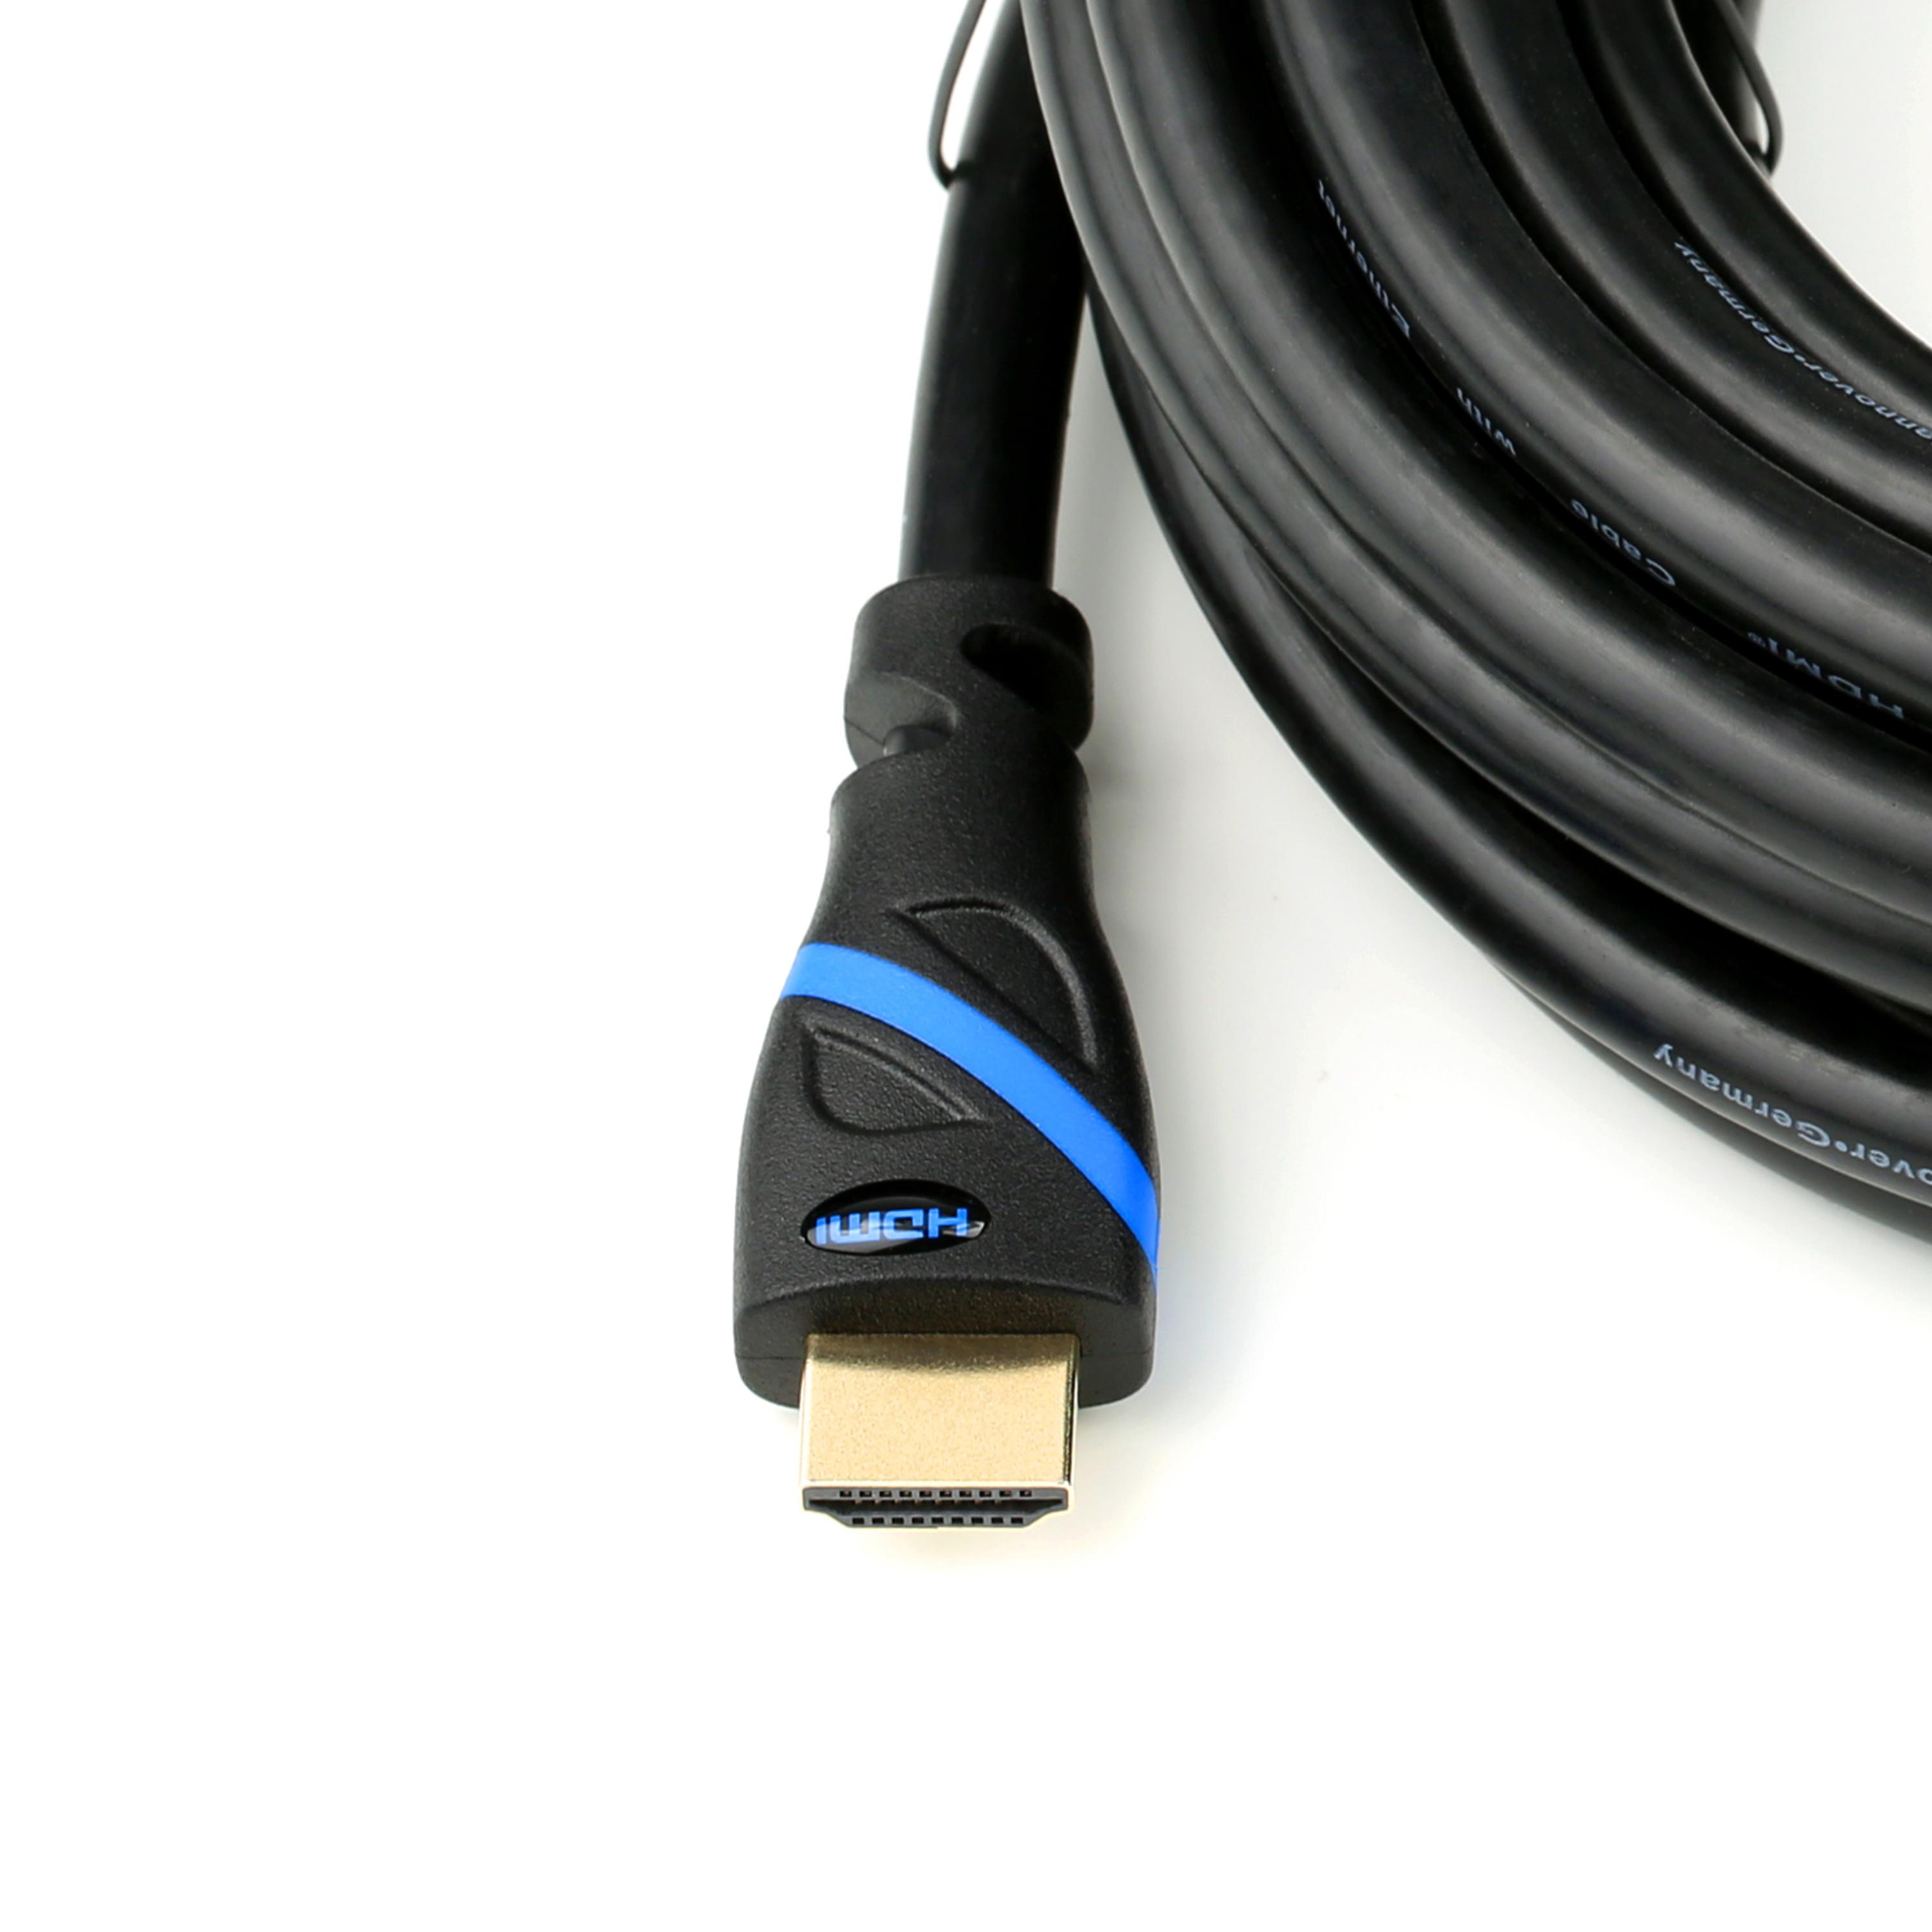 CSL HDMI 2.0 2m schwarz/blau Kabel, Kabel, HDMI